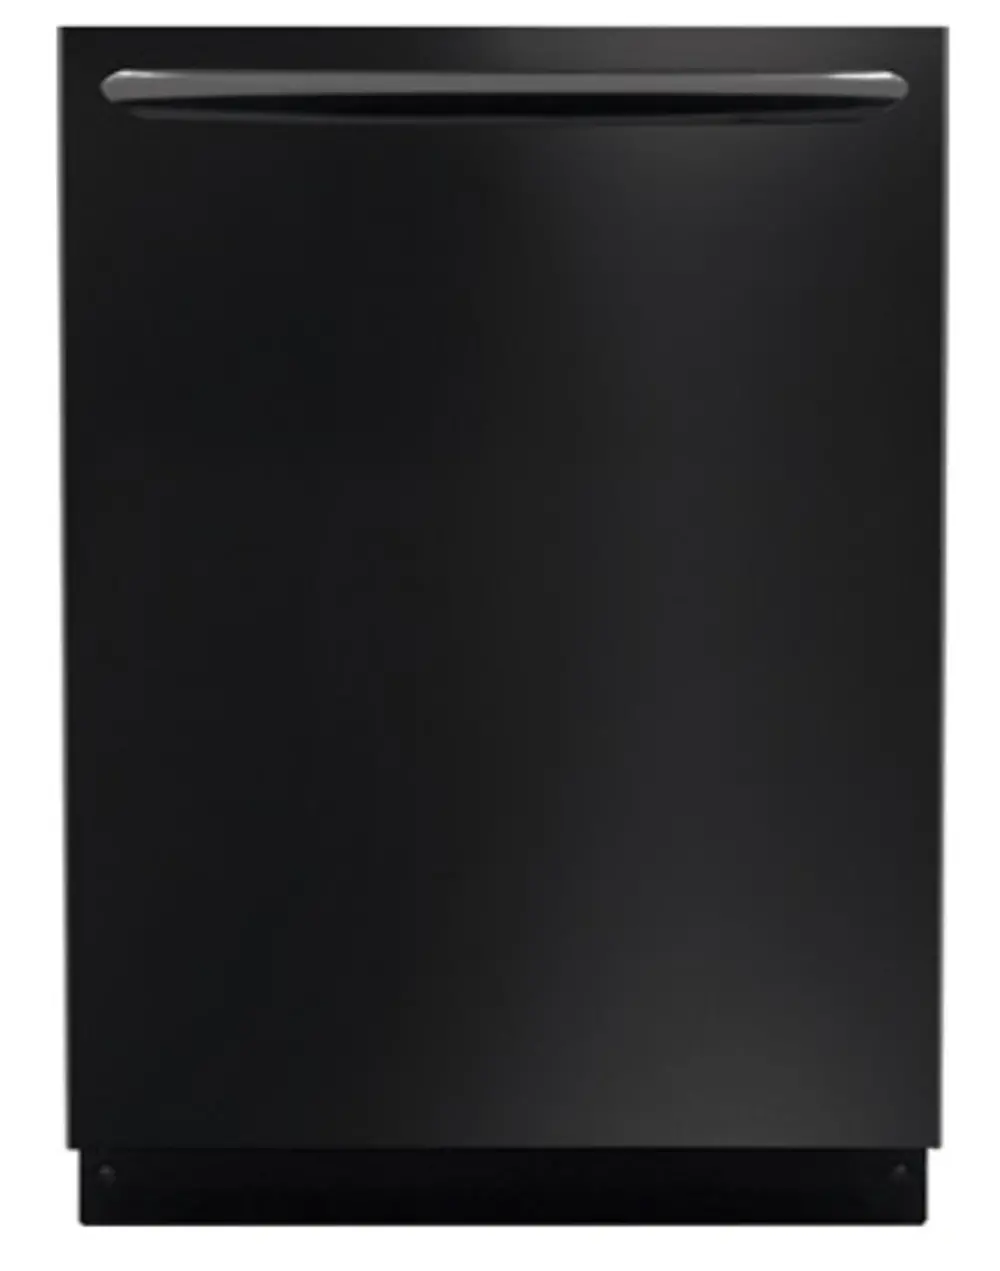 FGID2474QB Frigidaire Gallery 24 Inch Black Built-in Dishwasher-1